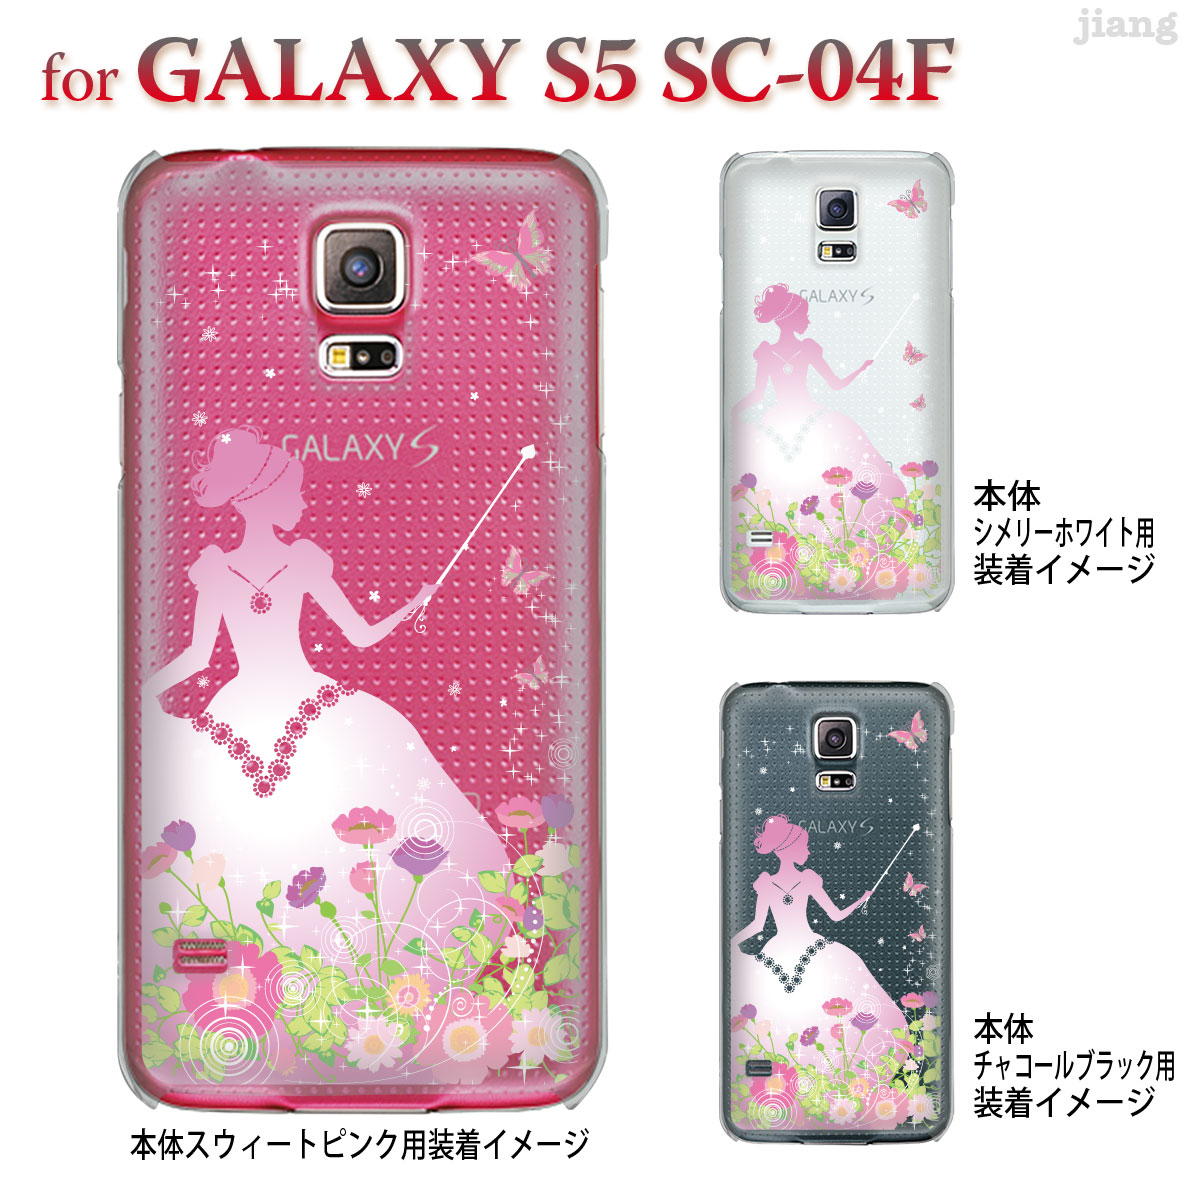 楽天市場 ジアン Jiang Galaxy S5 Sc 04f ケース カバー スマホケース クリアケース Clear Arts かわいい おしゃれ きれい プリンセス 22 Sc04f Ca0102 Tk Jiang